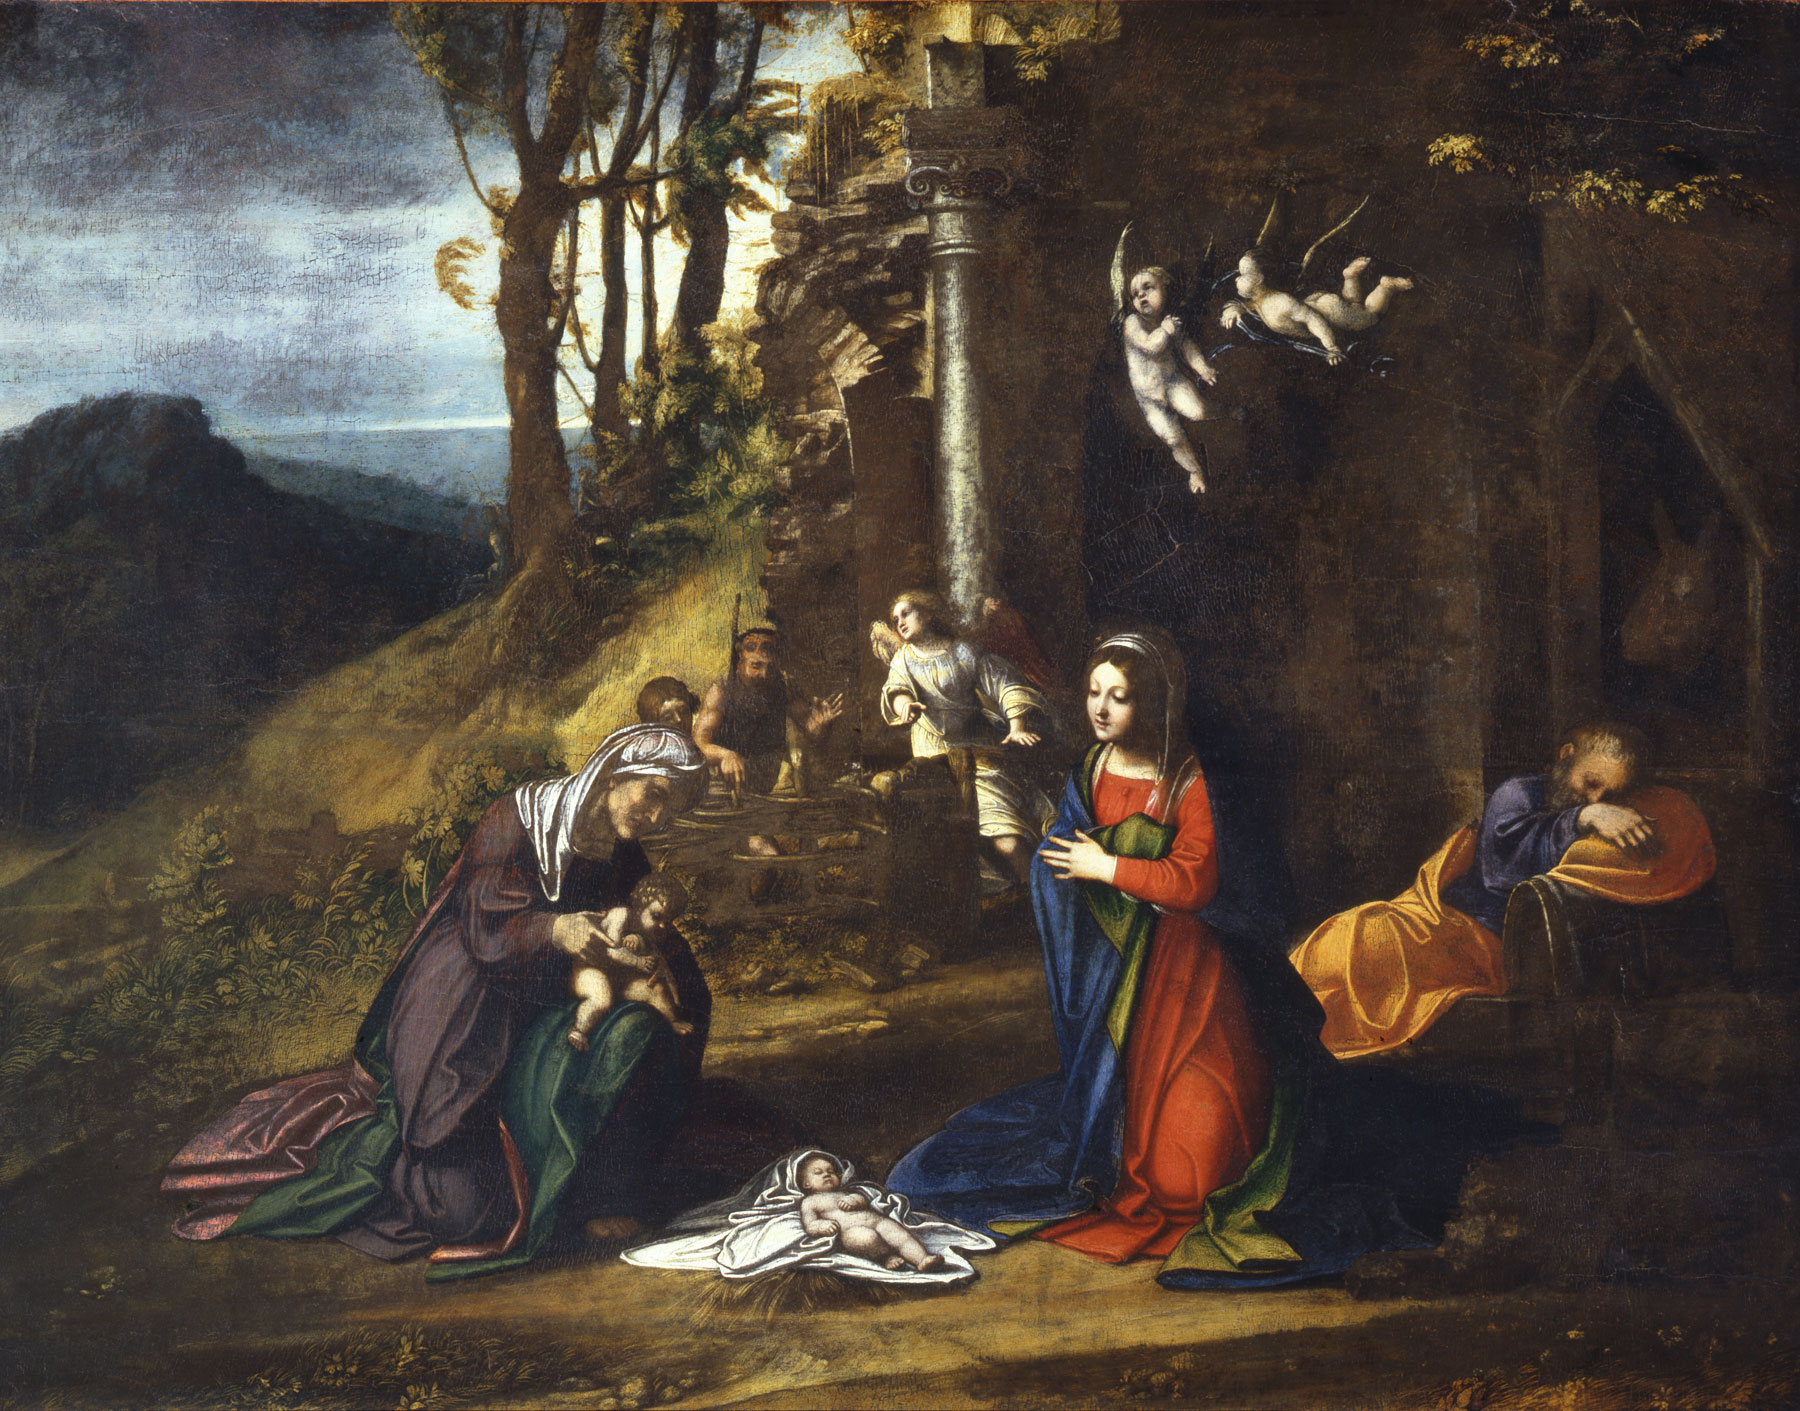 Antonio Allegri detto il Correggio (1489 -1534), NativitÃ  con Santa Elisabetta e San Giovannino (1510-1512; olio su tavola, 79 x 100 cm; Milano, Pinacoteca di Brera)
